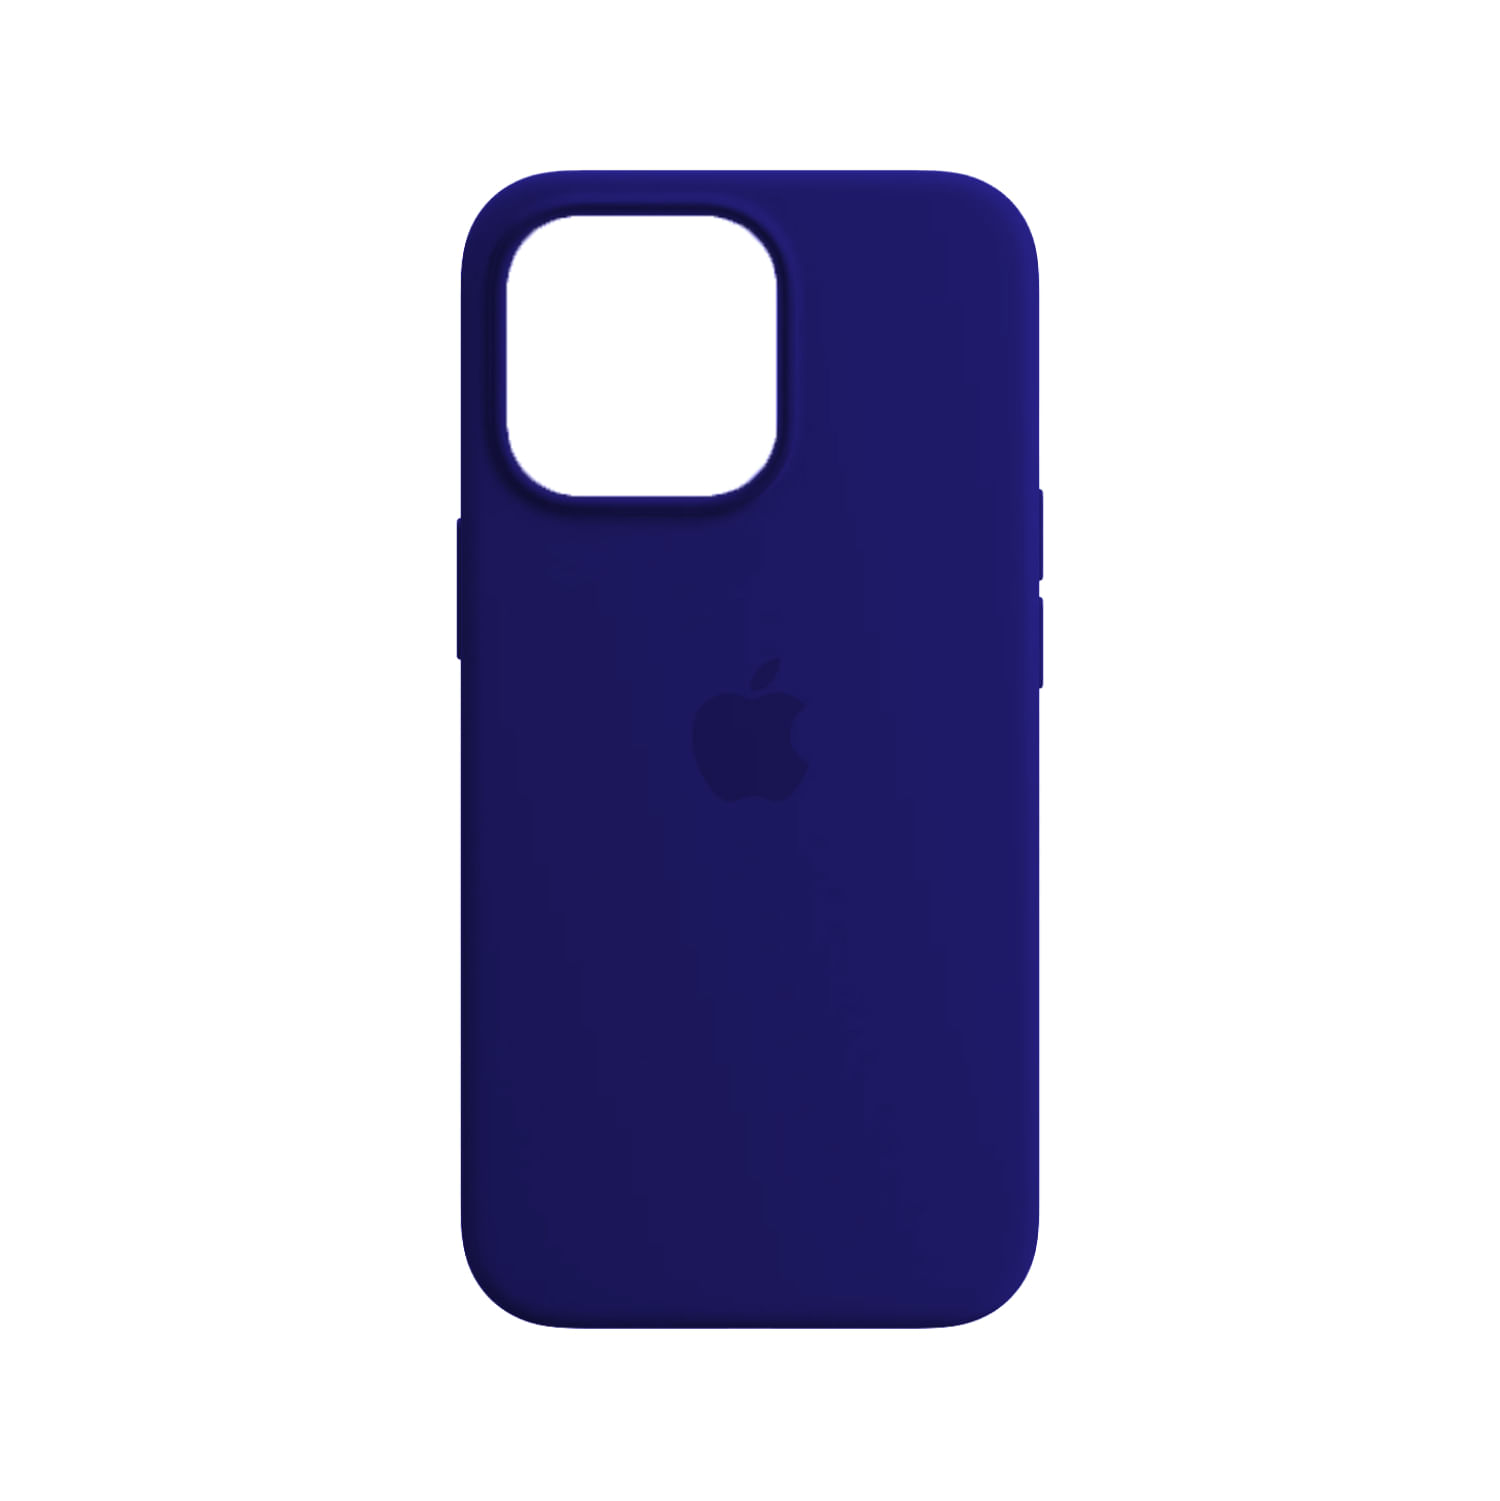 Case De Silicona Iphone 12 Pro Max Azul